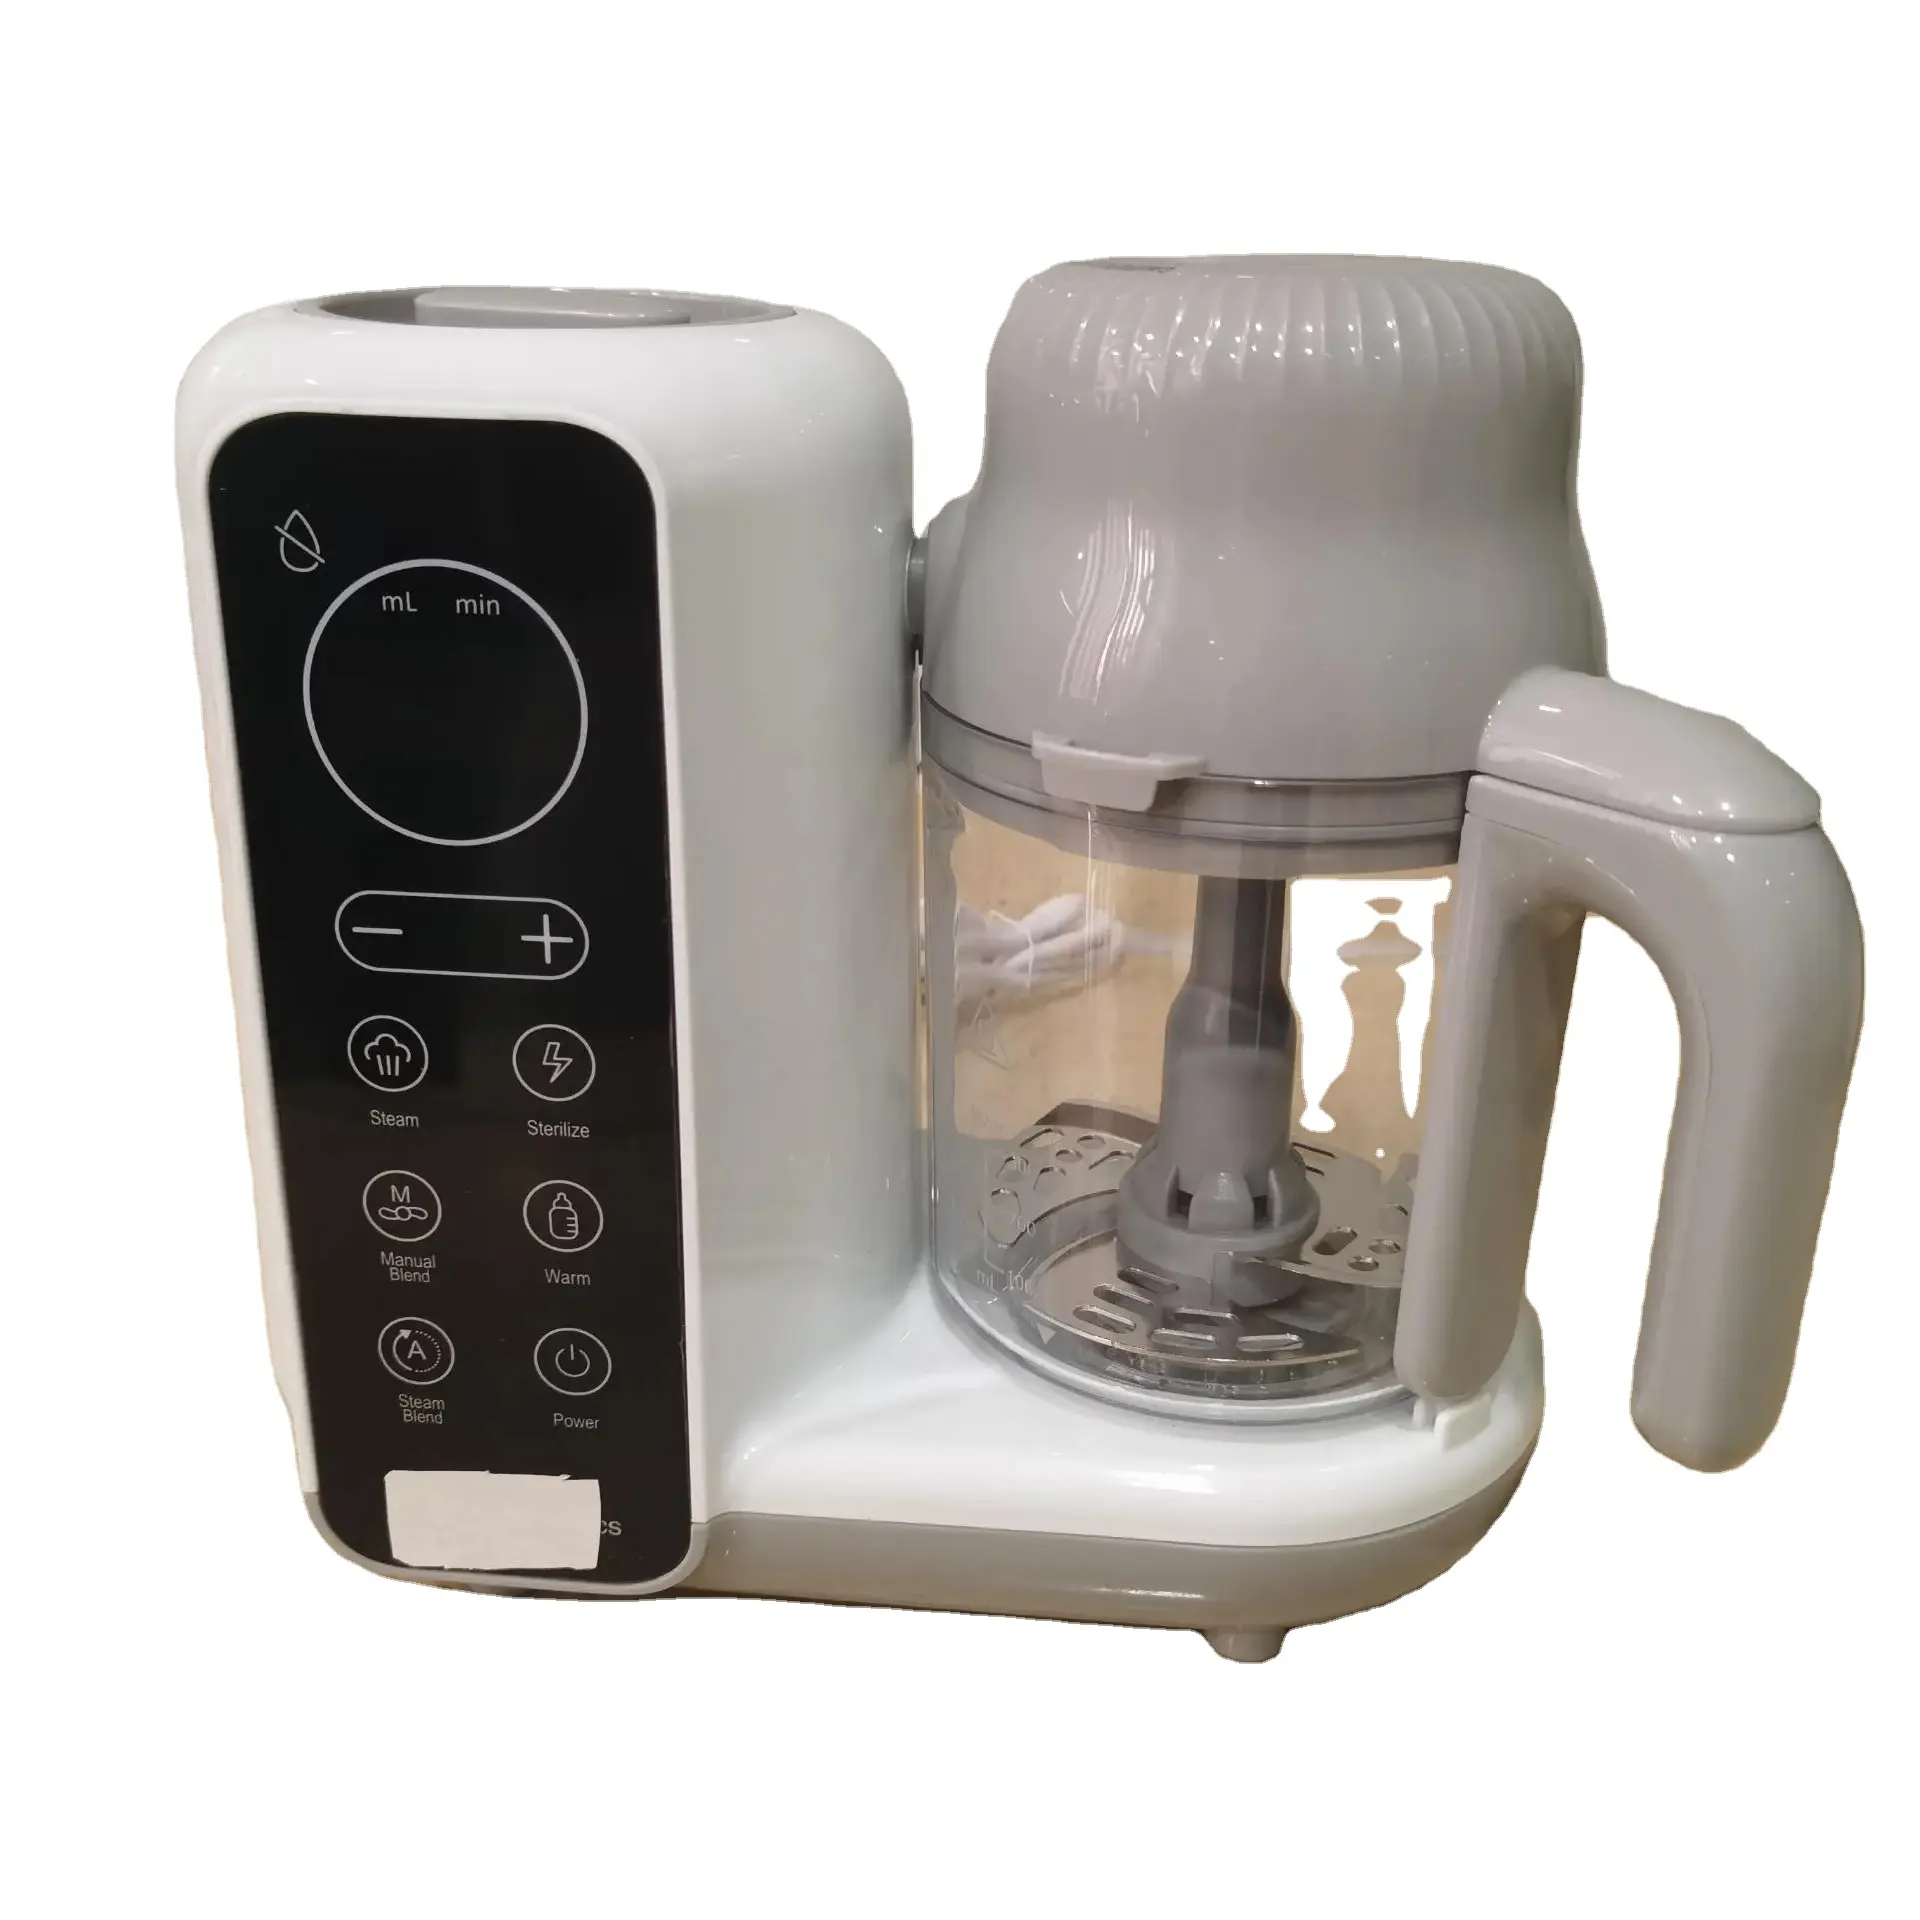 Haushalt Küche 7-in-1 Multifunktion 300 ml Tasse Dampfmischung Babynahrung Heizung 30 Minuten elektrische weiche Babynahrung Prozessor